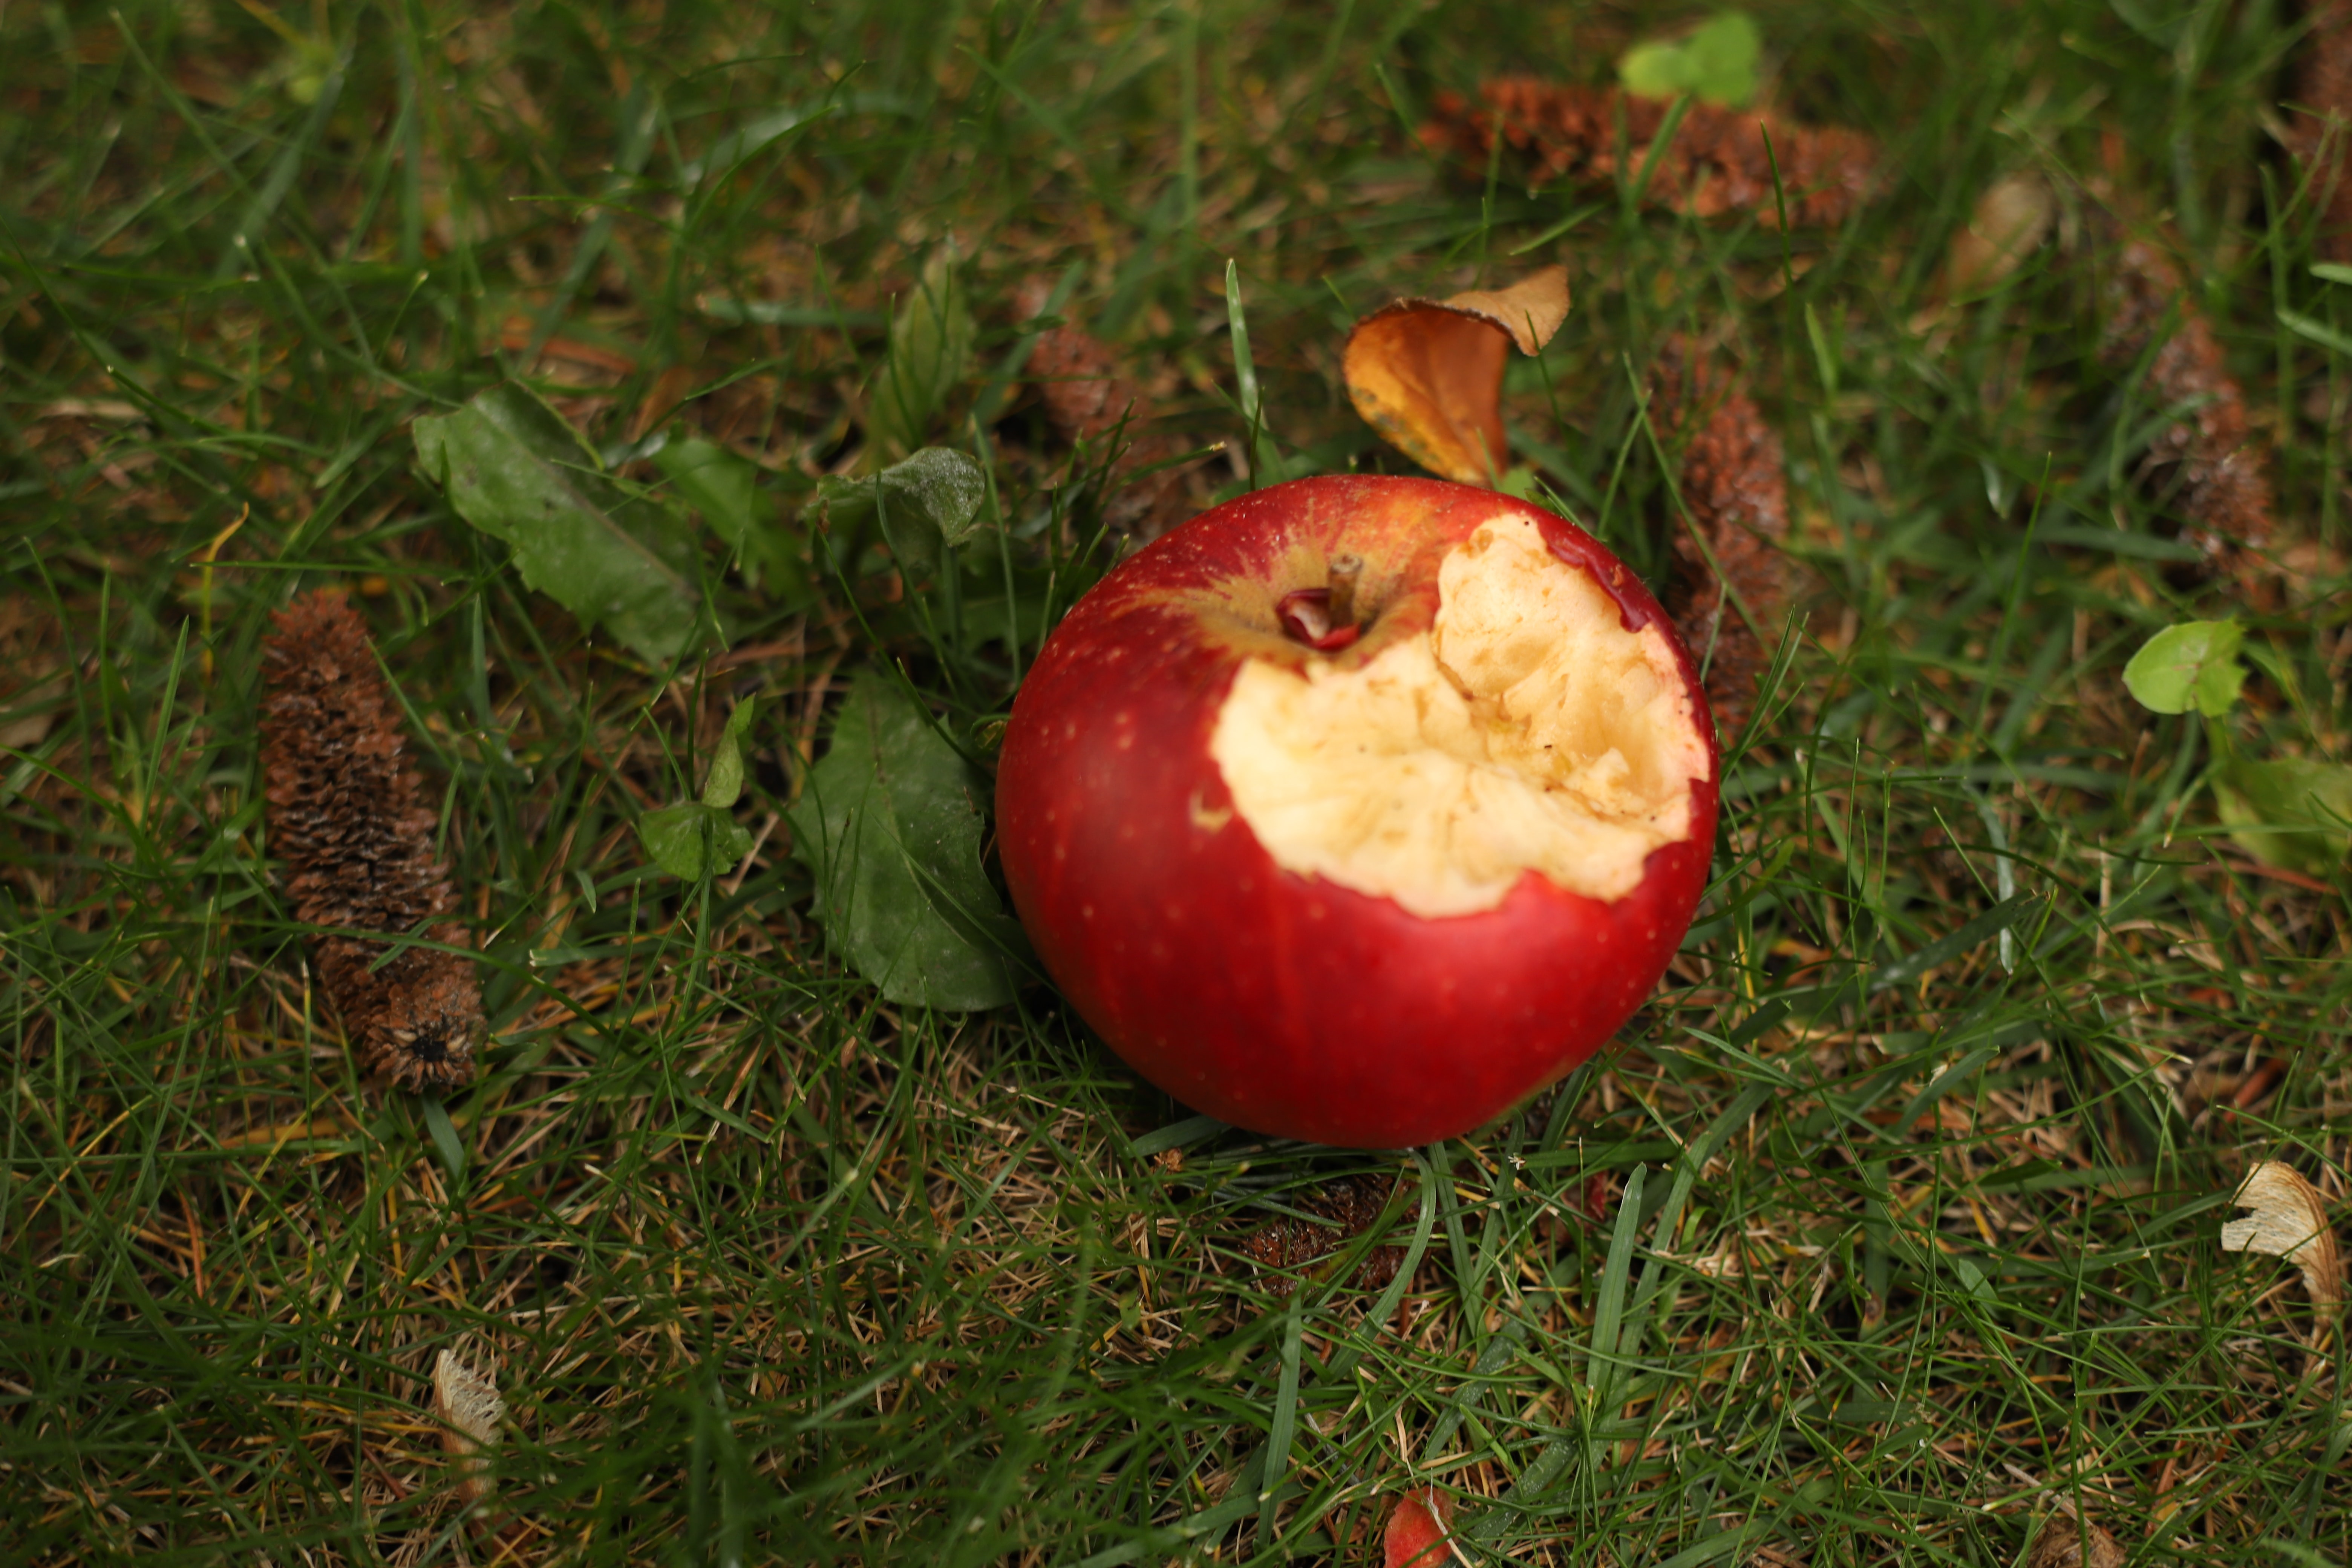 An eaten apple on grass